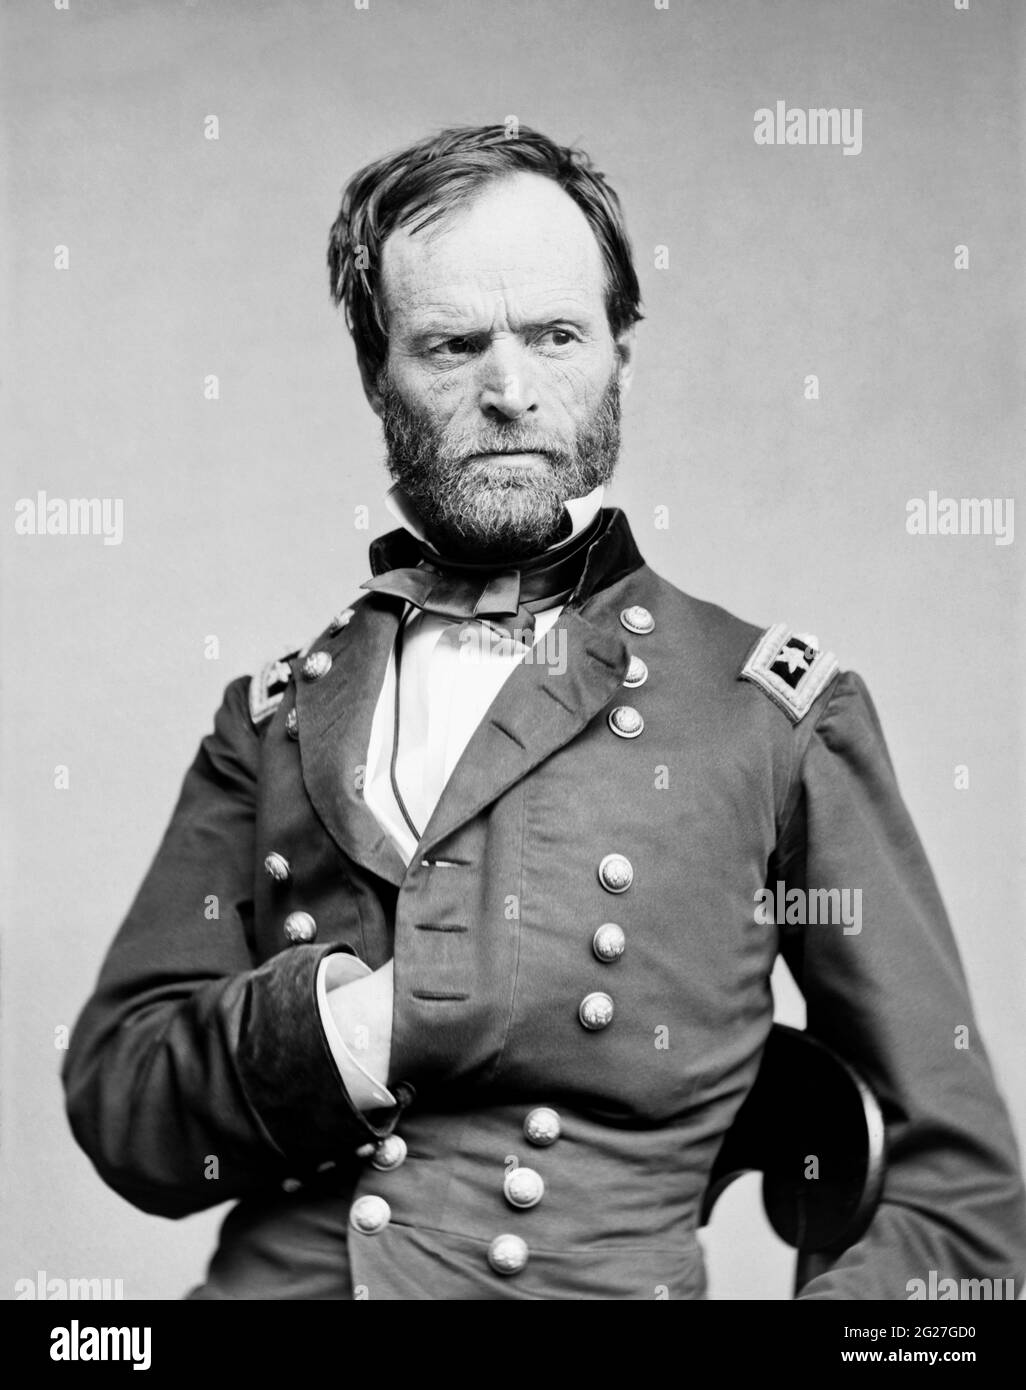 Portrait du général de l'Union William Tecumseh Sherman dans son uniforme de l'Armée fédérale. Banque D'Images